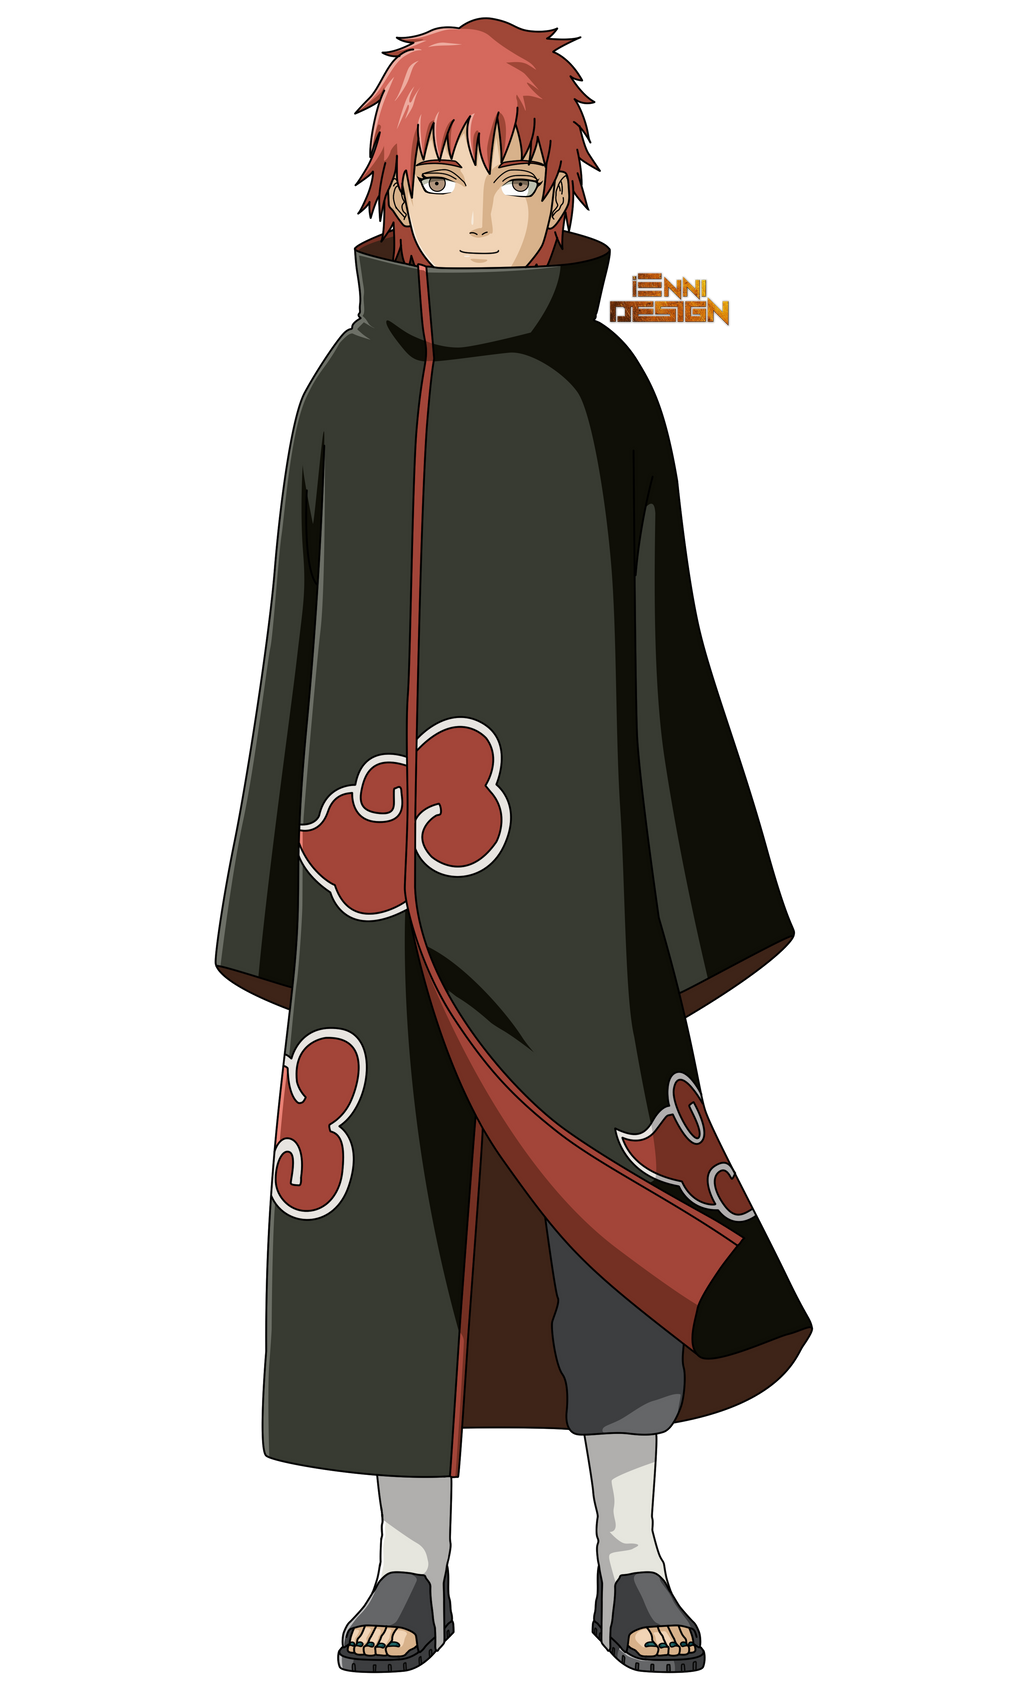 Naruto Shippuden|Sasori (Akatsuki) by iEnniDESIGN on ...